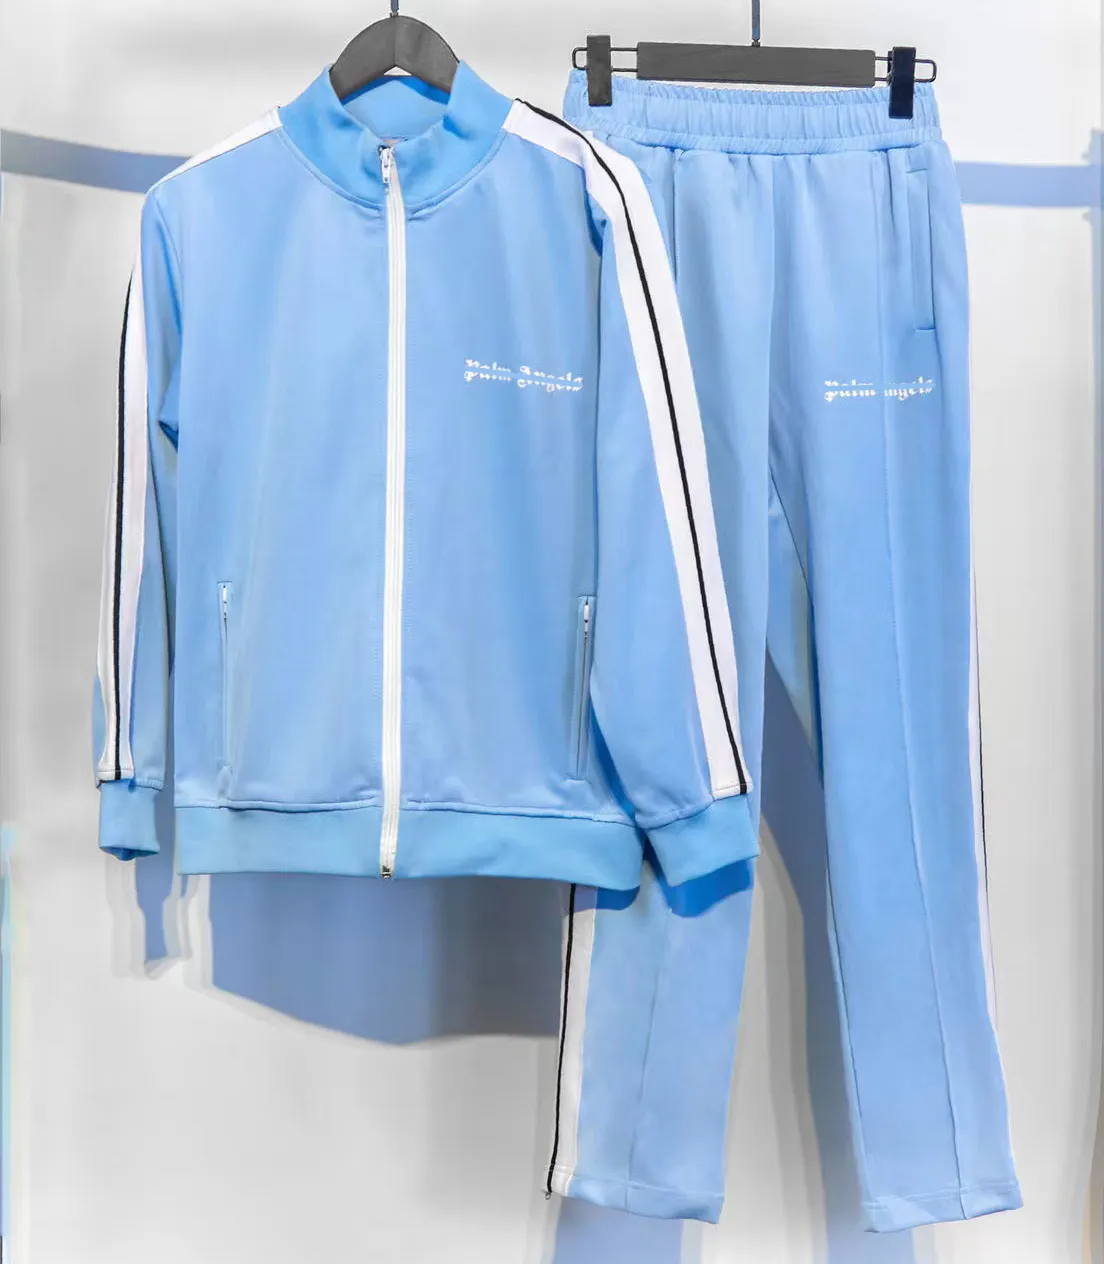 Ängelmärke Kvinnor Mens Palm Tracksuits Sweatshirts Suits Män spår Svettrockar Man Designers Angels Jackets Hoodies Angle Sportswear NJ3C U23S